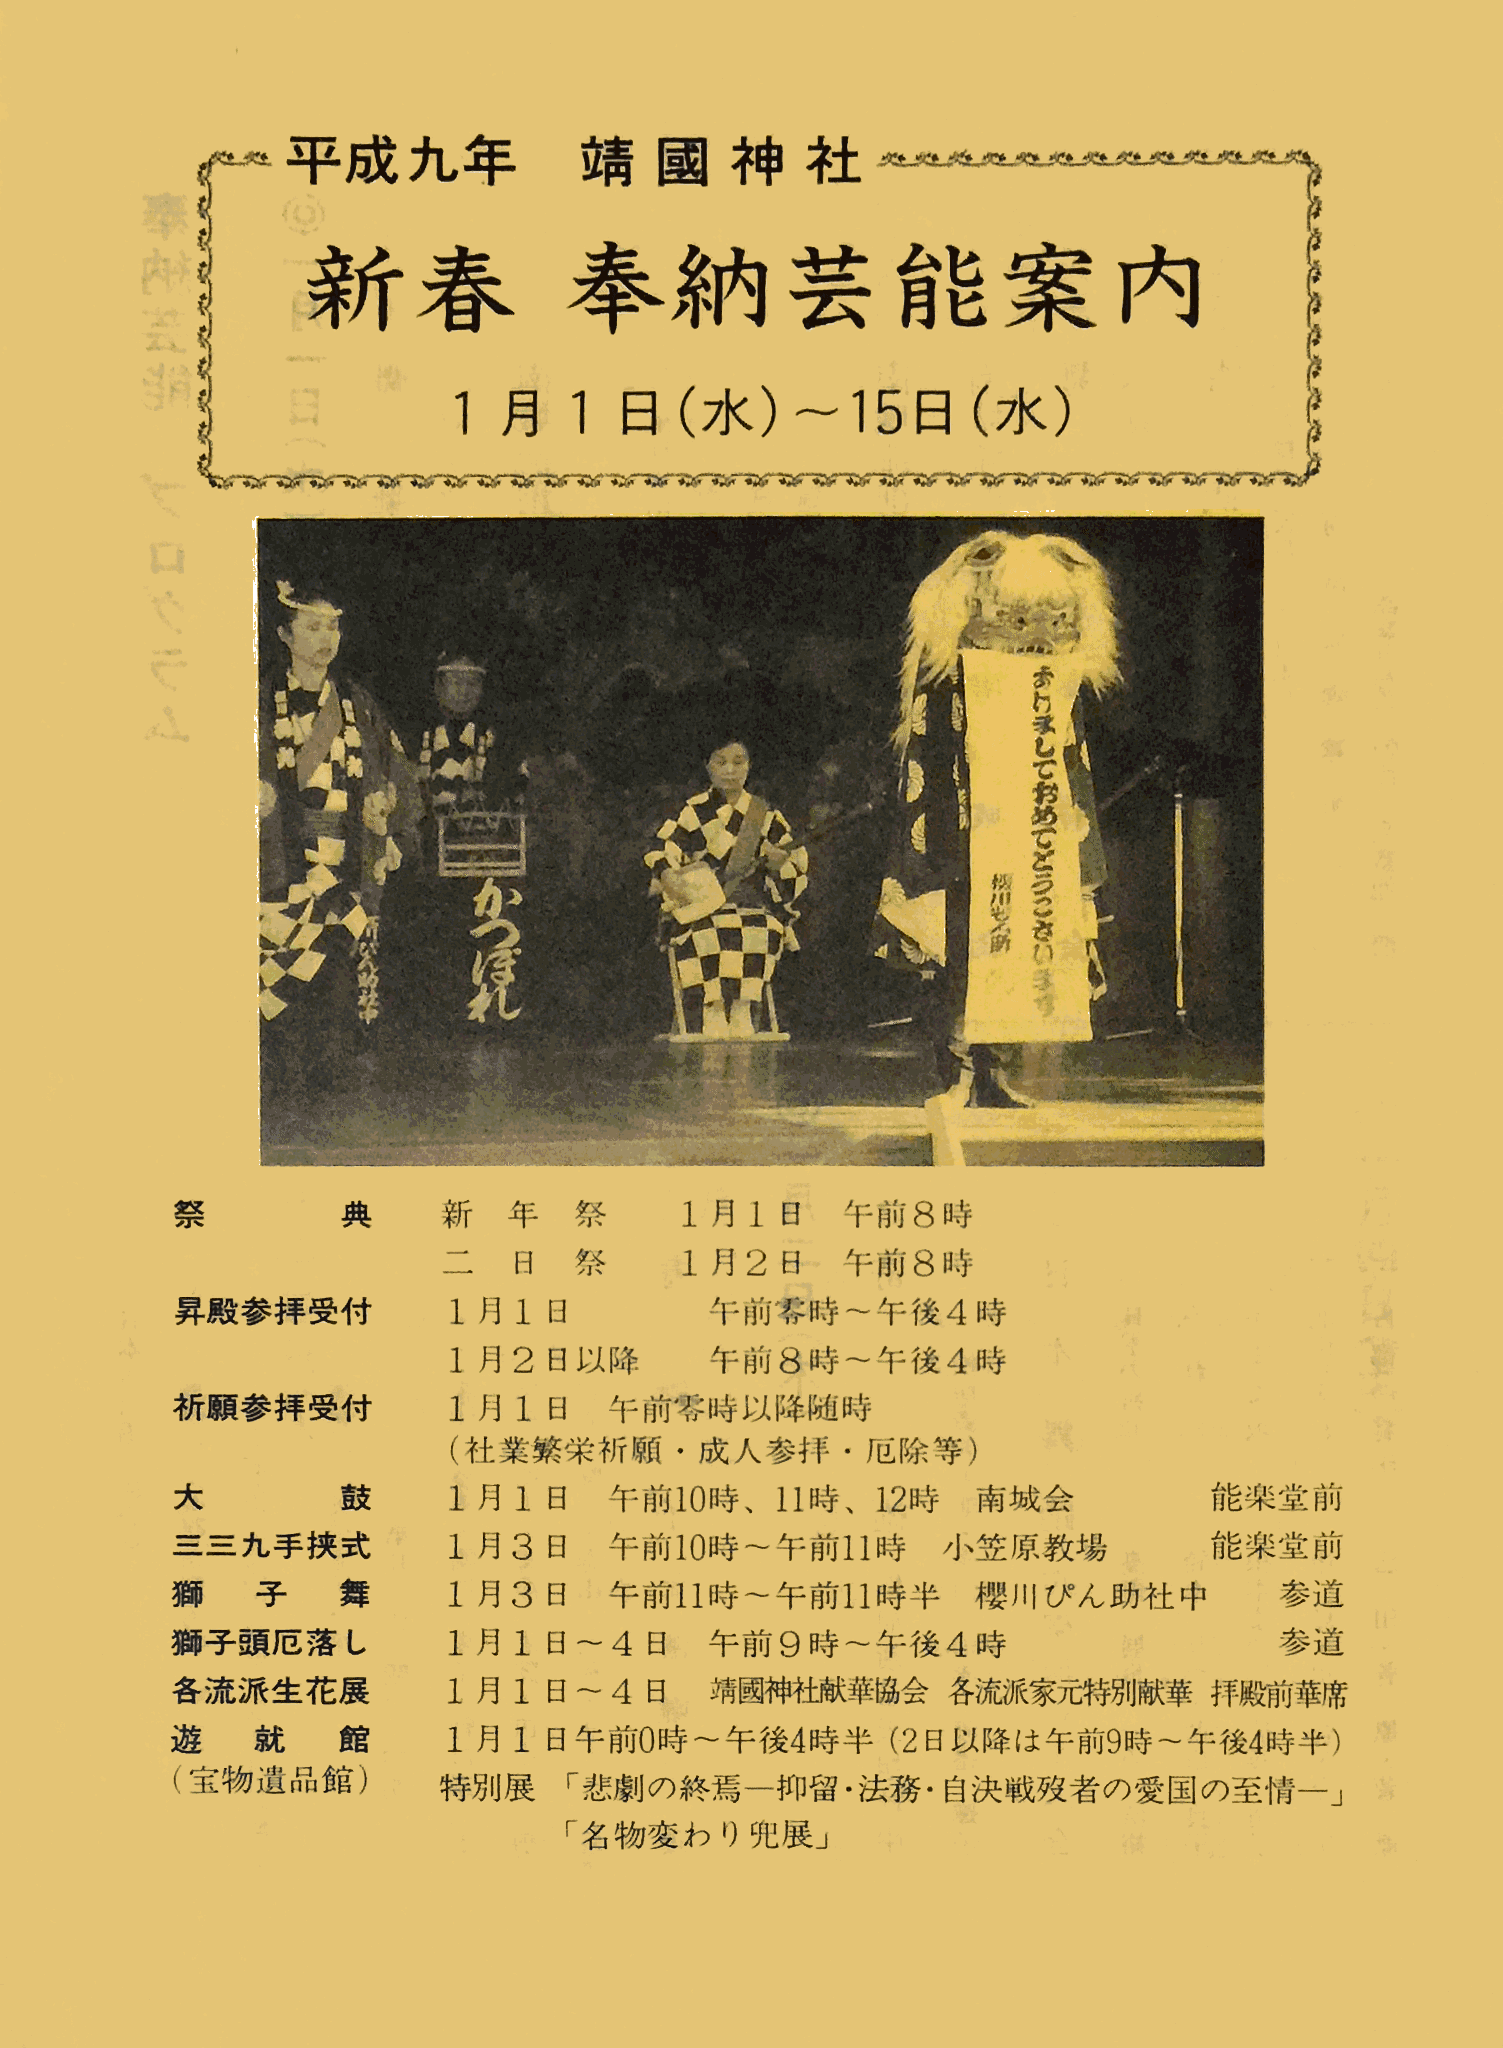 1997年1月1日 靖国神社奉納「弓矢立合」「難波」